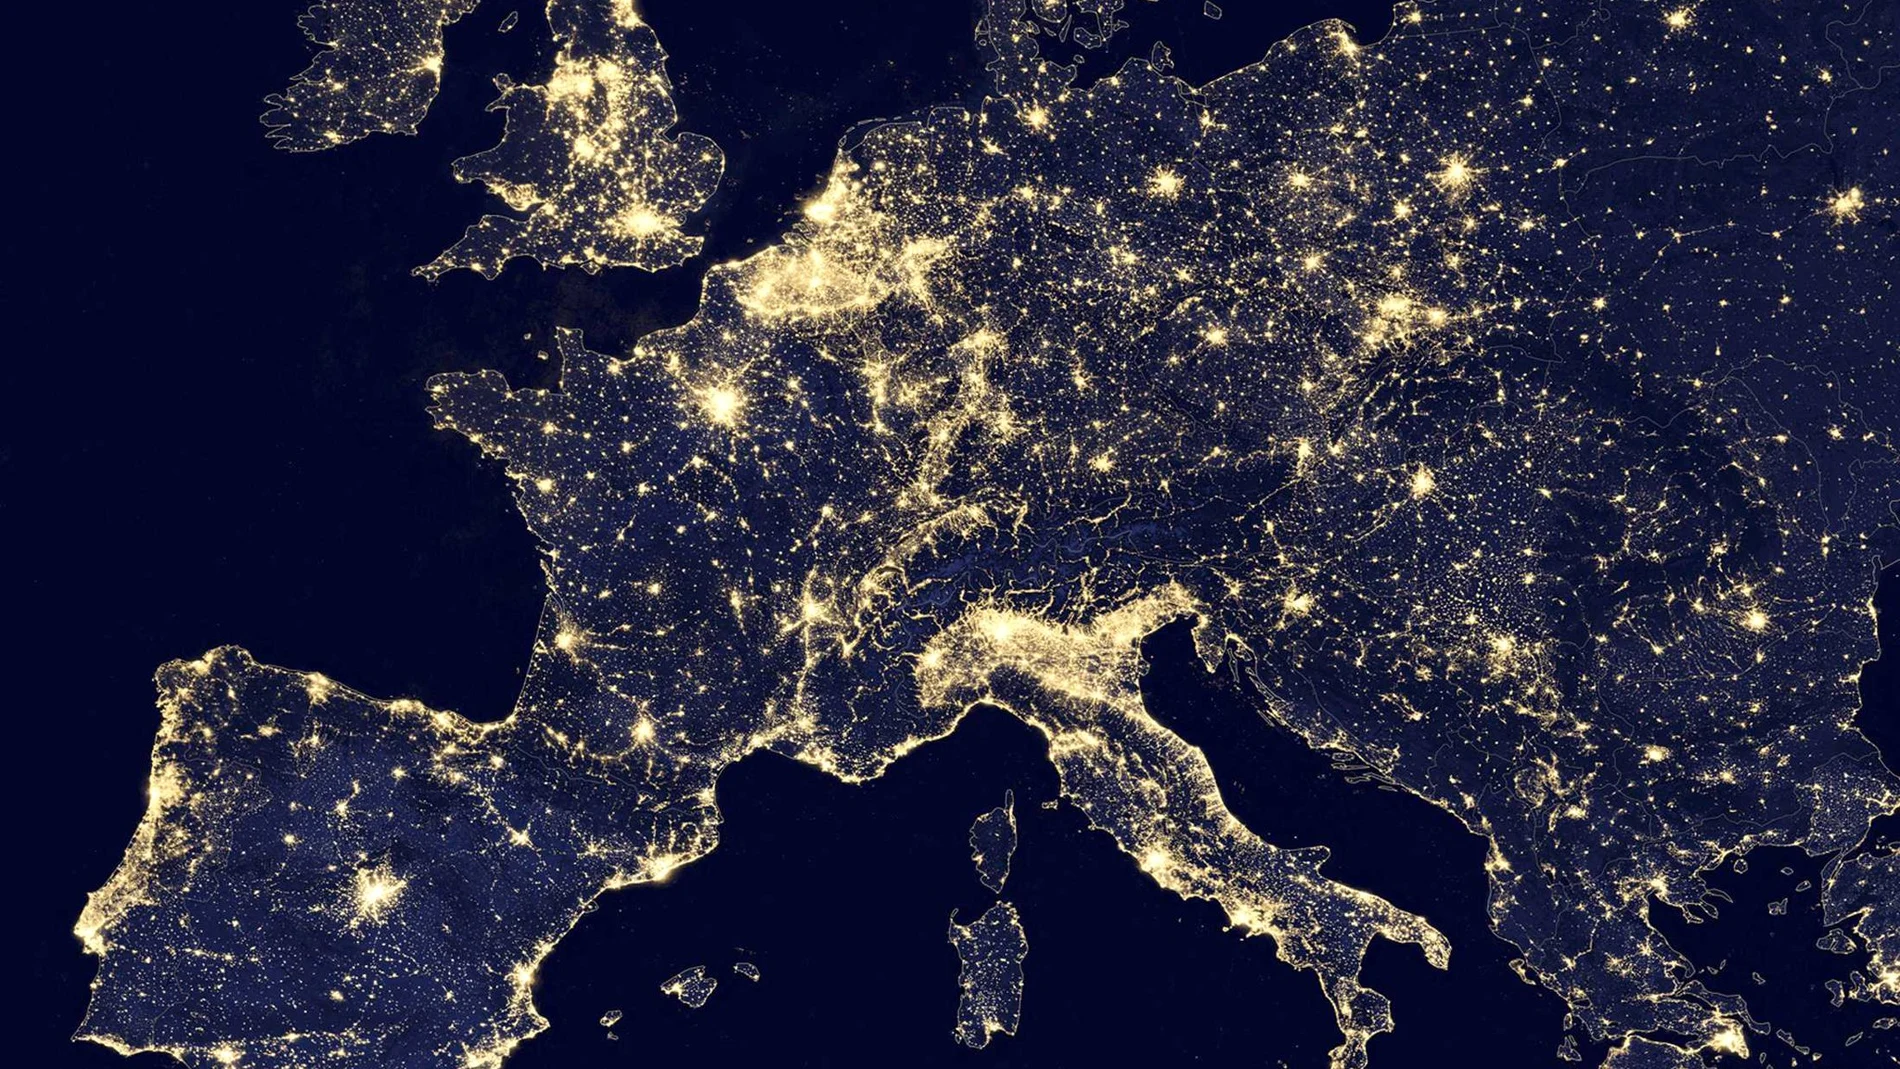 Mapa eléctrico de Europa